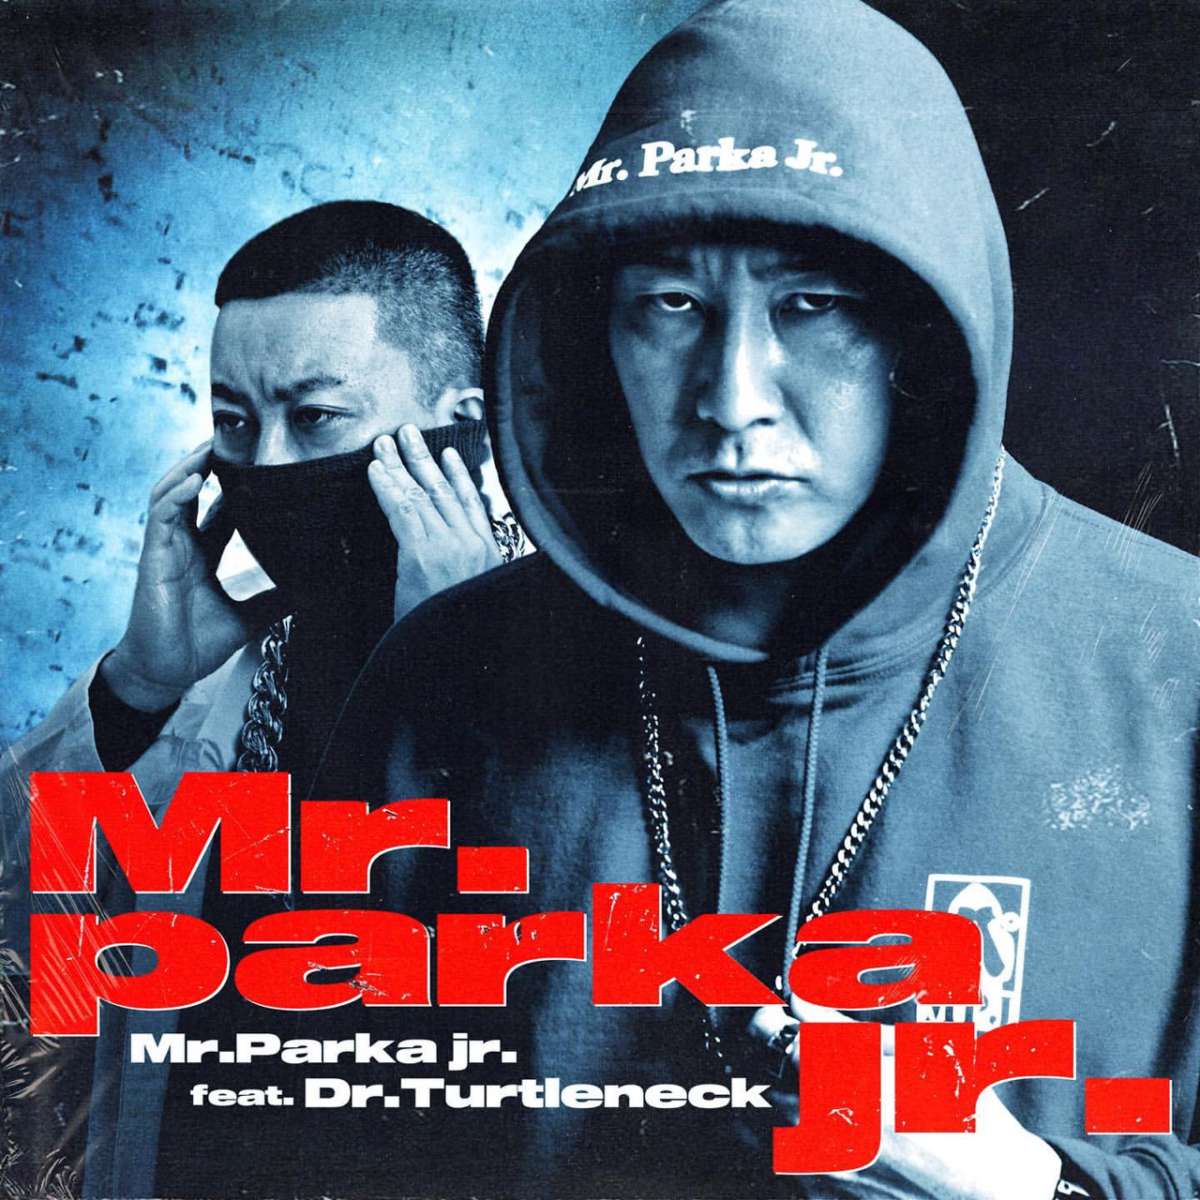 チョコレートプラネットさん新曲 Mr.Parka Jr がリリースされました